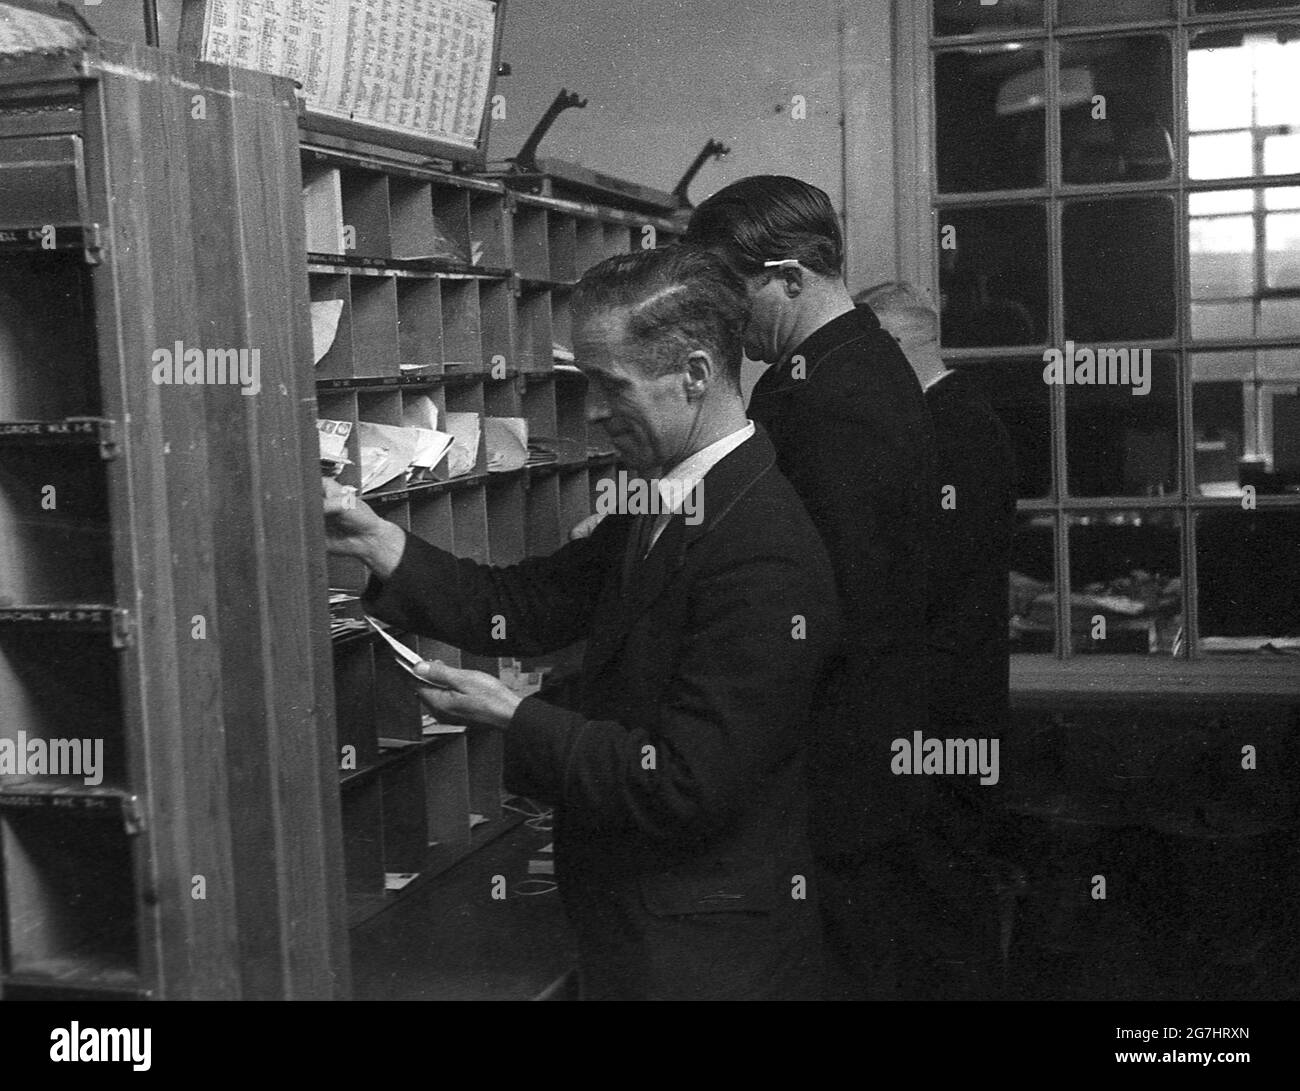 Anni '50, storici, tre uomini GPO lavoratori smistare le lettere o la posta nel cubby o pigeon-buchi su una mensola diviso in il distretto dfferent strade, Londra, Inghilterra, Regno Unito. Foto Stock